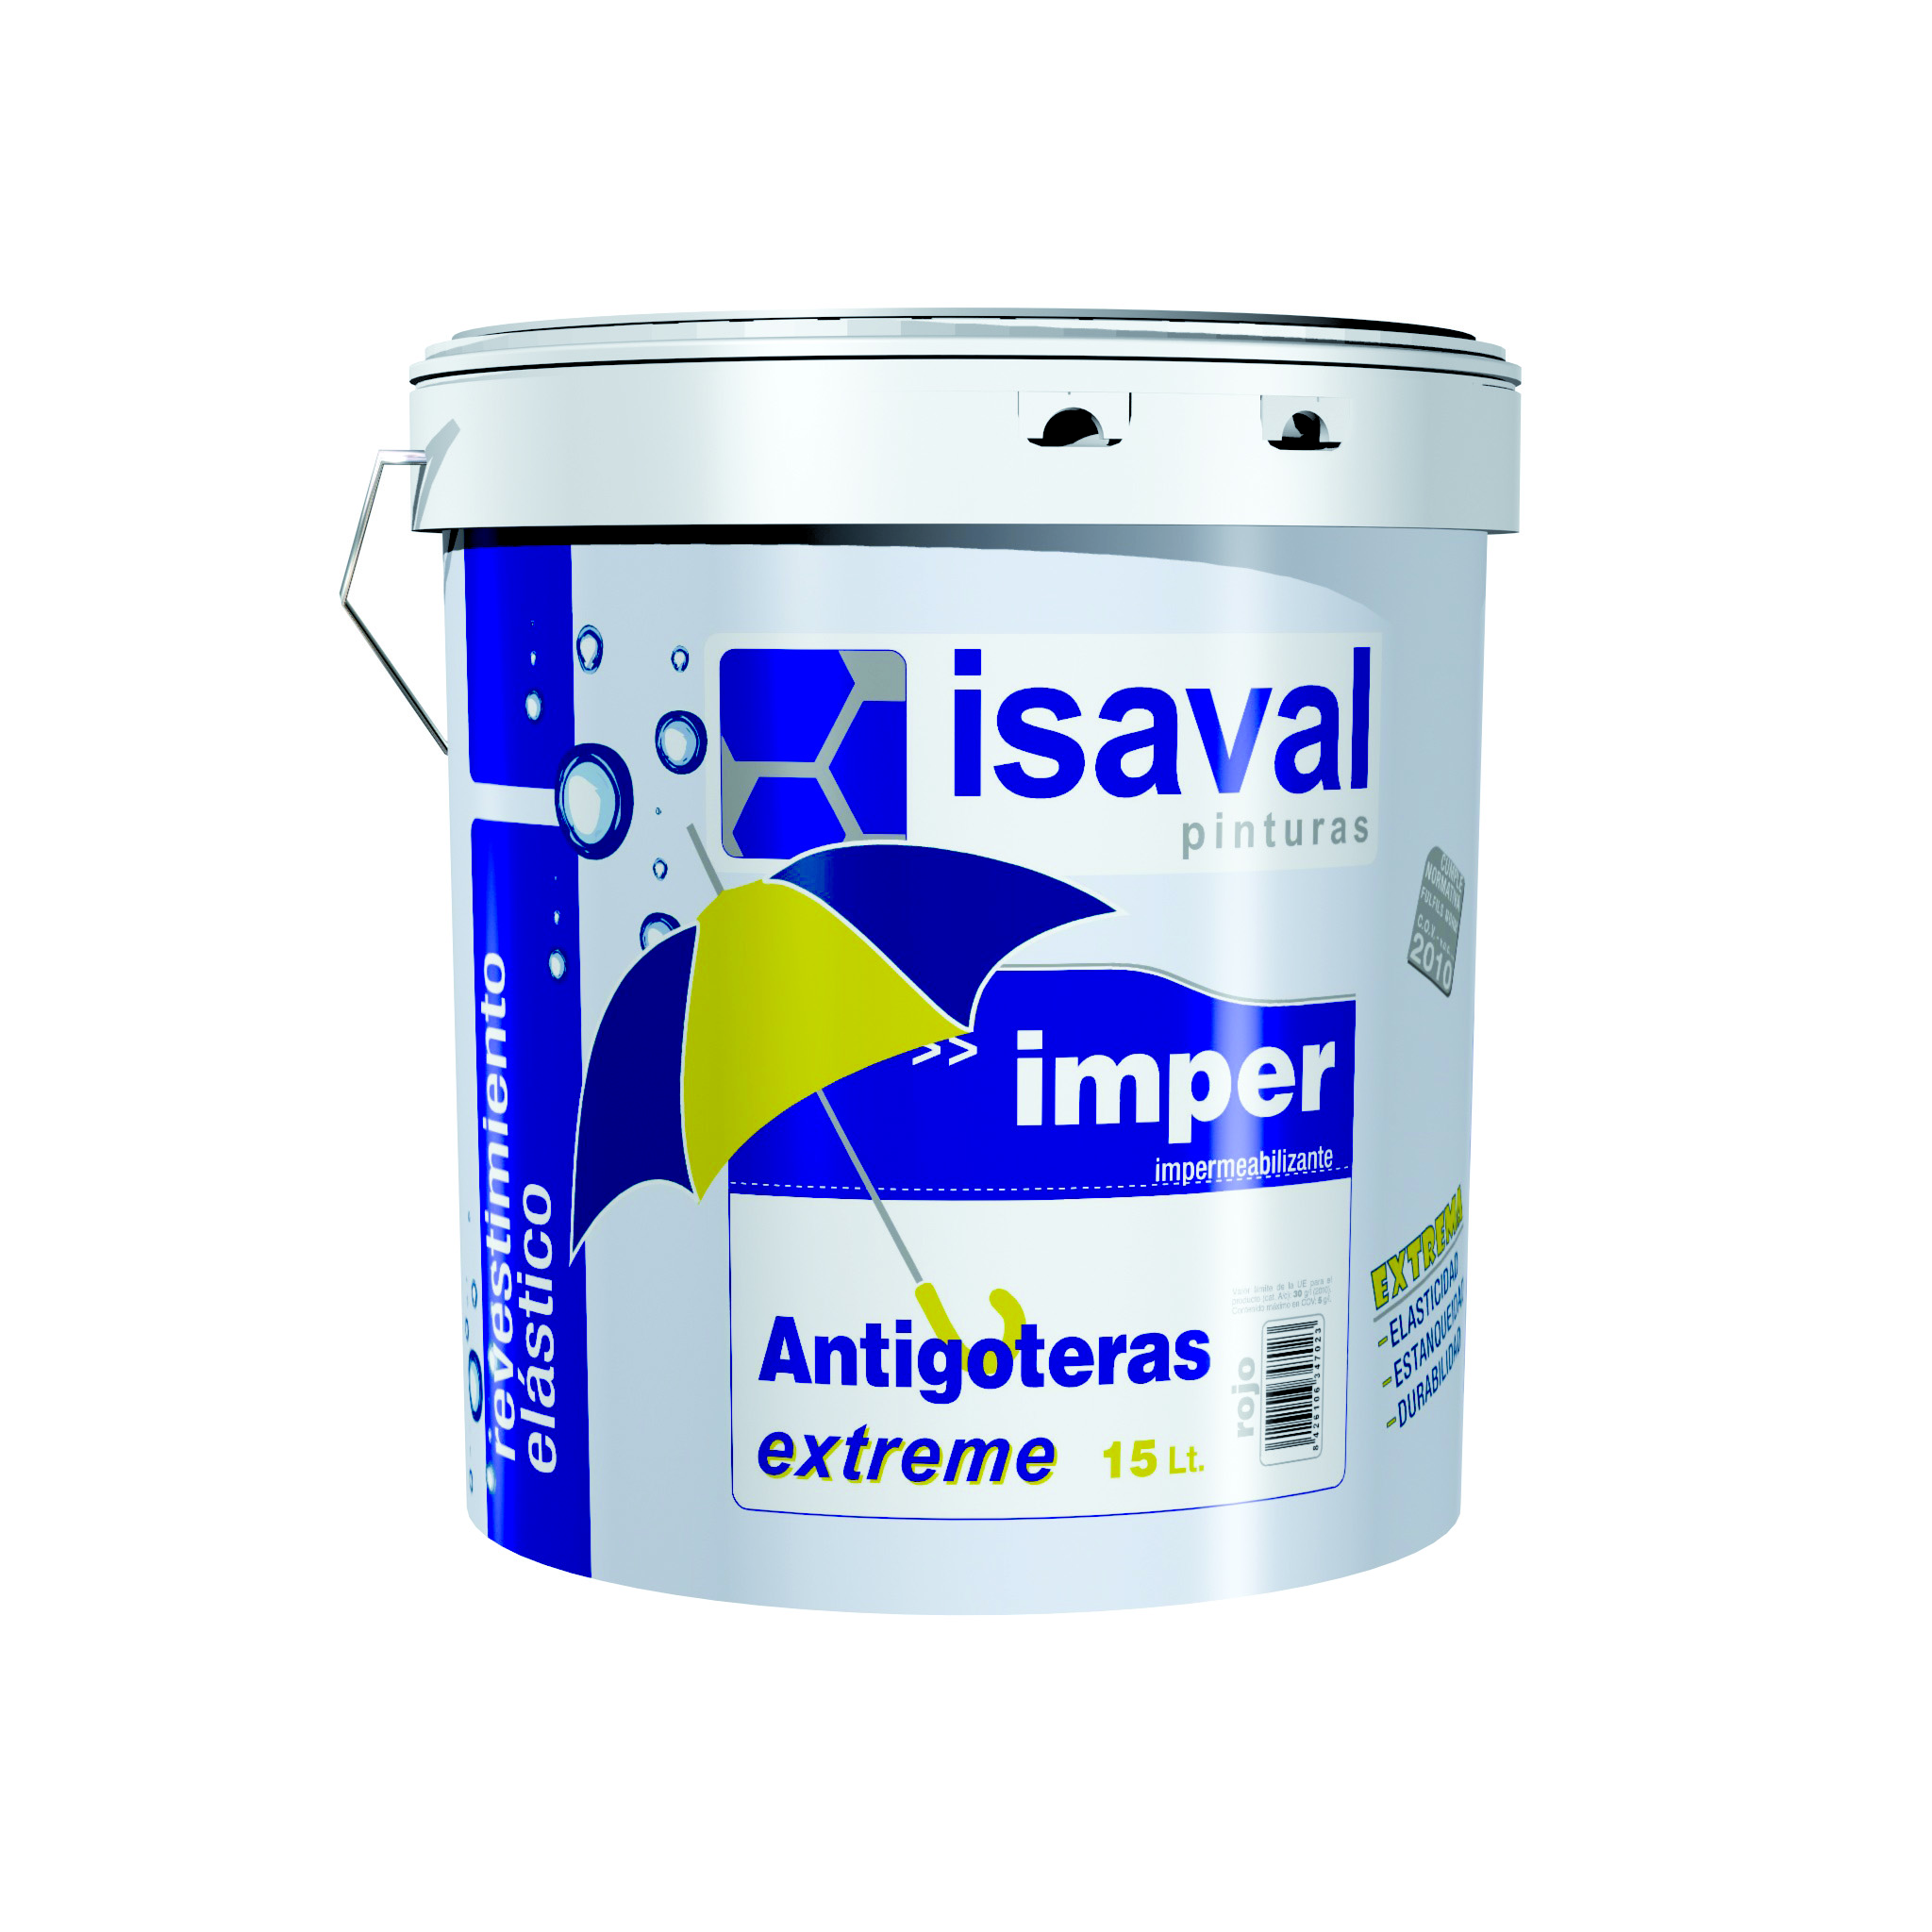 Гидроизолирующая резиновая краска для крыш, стен и полов Антиготерас 0,75л ISAVAL